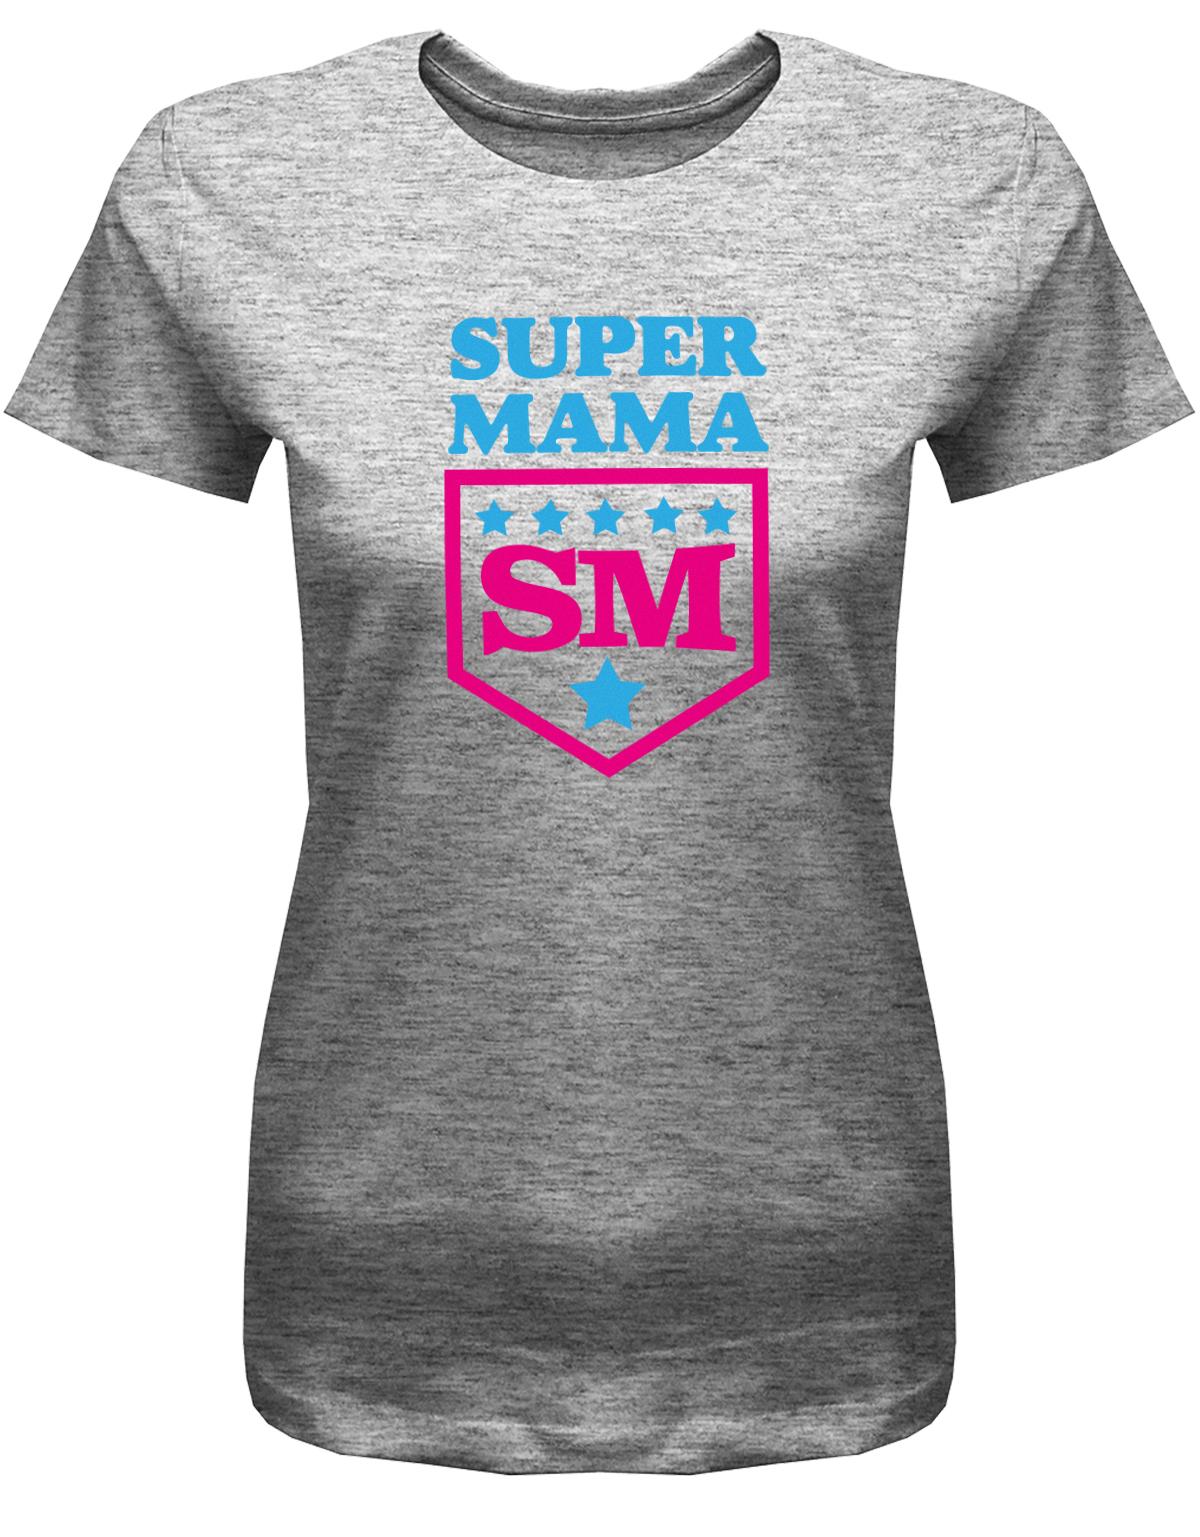 Super-Mama-Sterne-Damen-Shirt-Grau